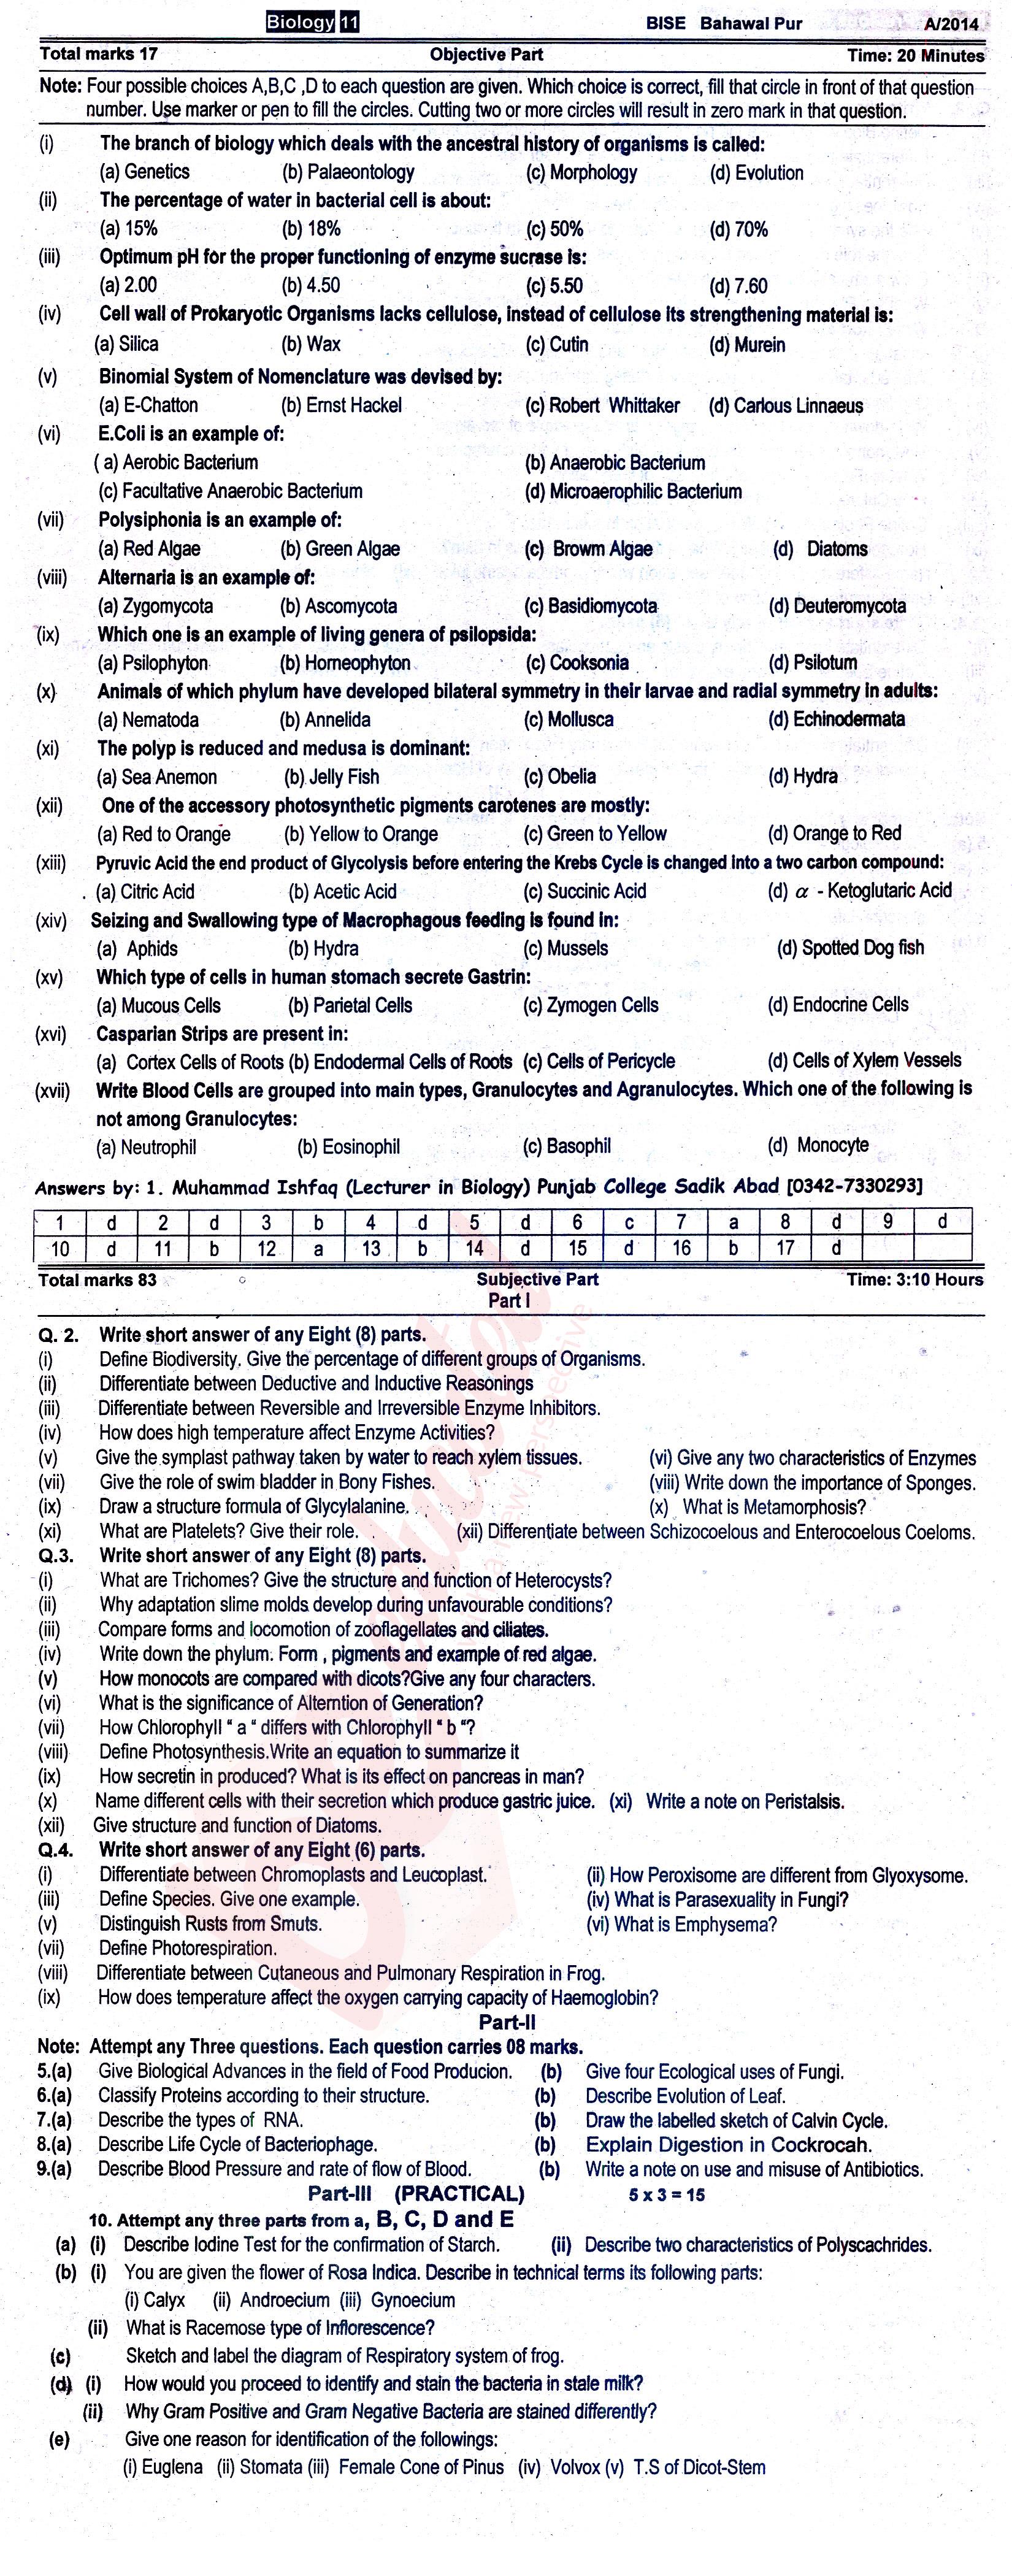 Biology FSC Part 1 Past Paper Group 1 BISE Bahawalpur 2014